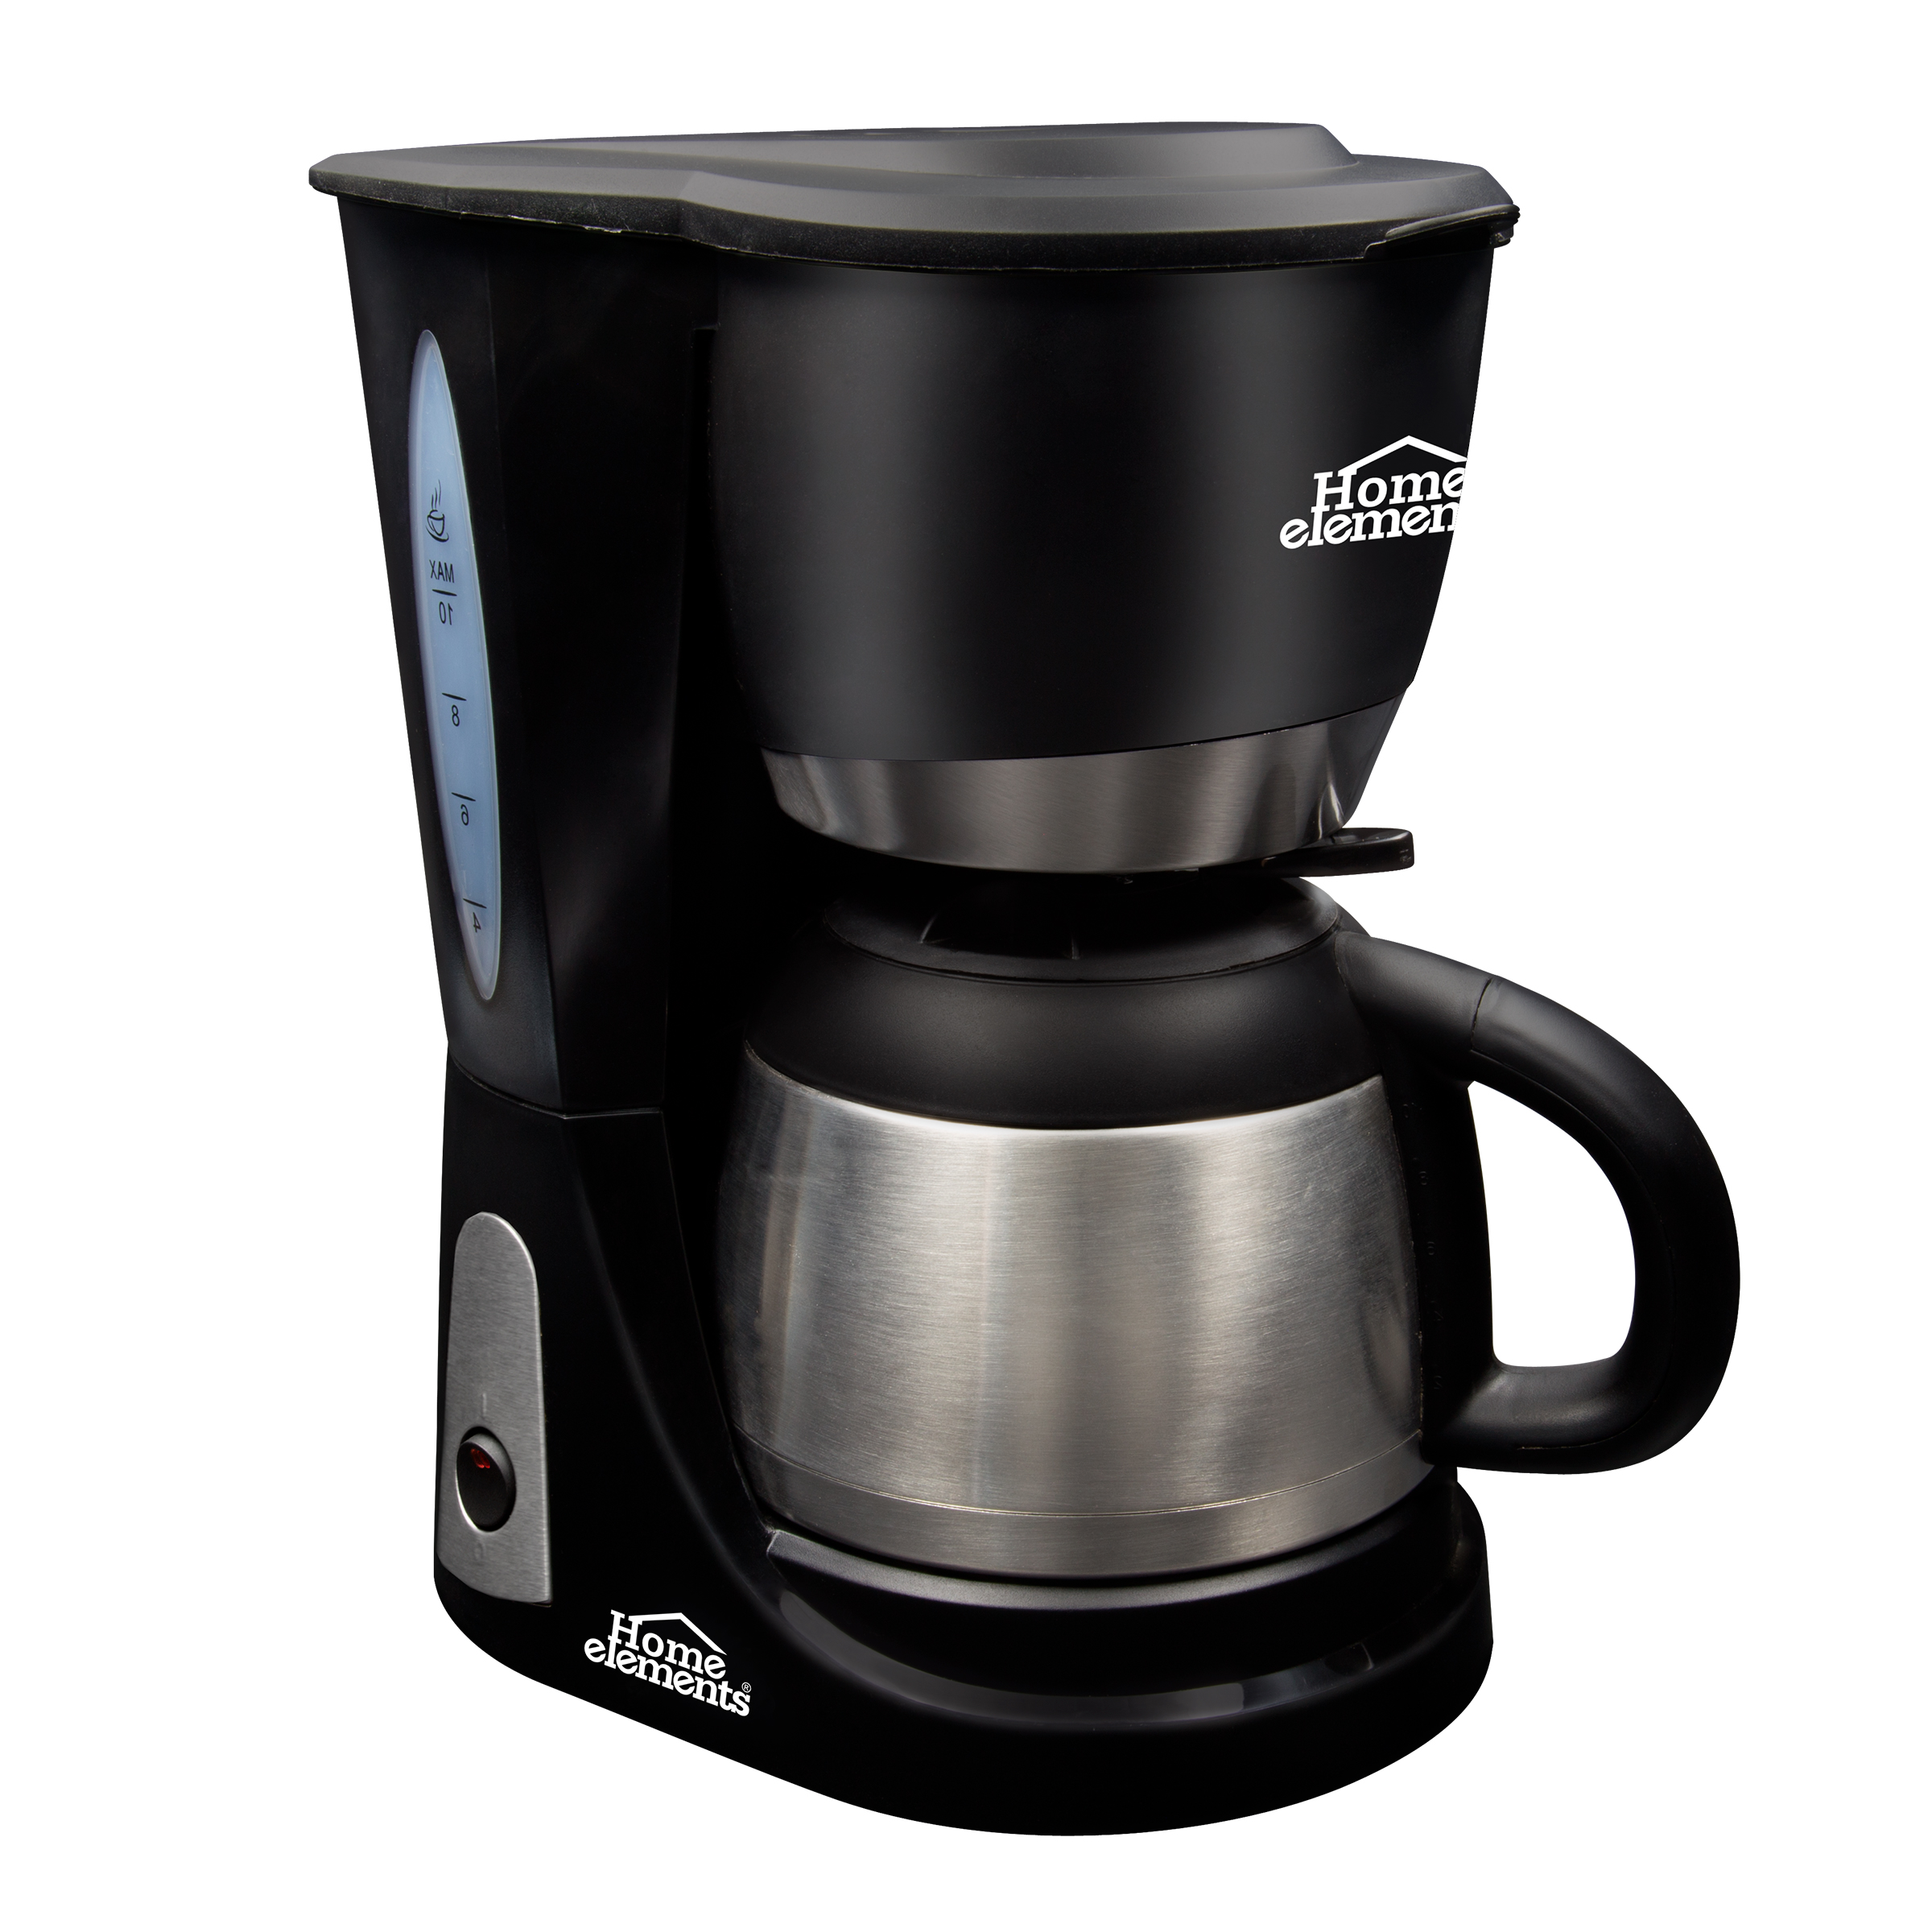  Electrodomésticos - Cocina y Comedor: Hogar y Cocina: Coffee,  Tea & Espresso Appliances y más